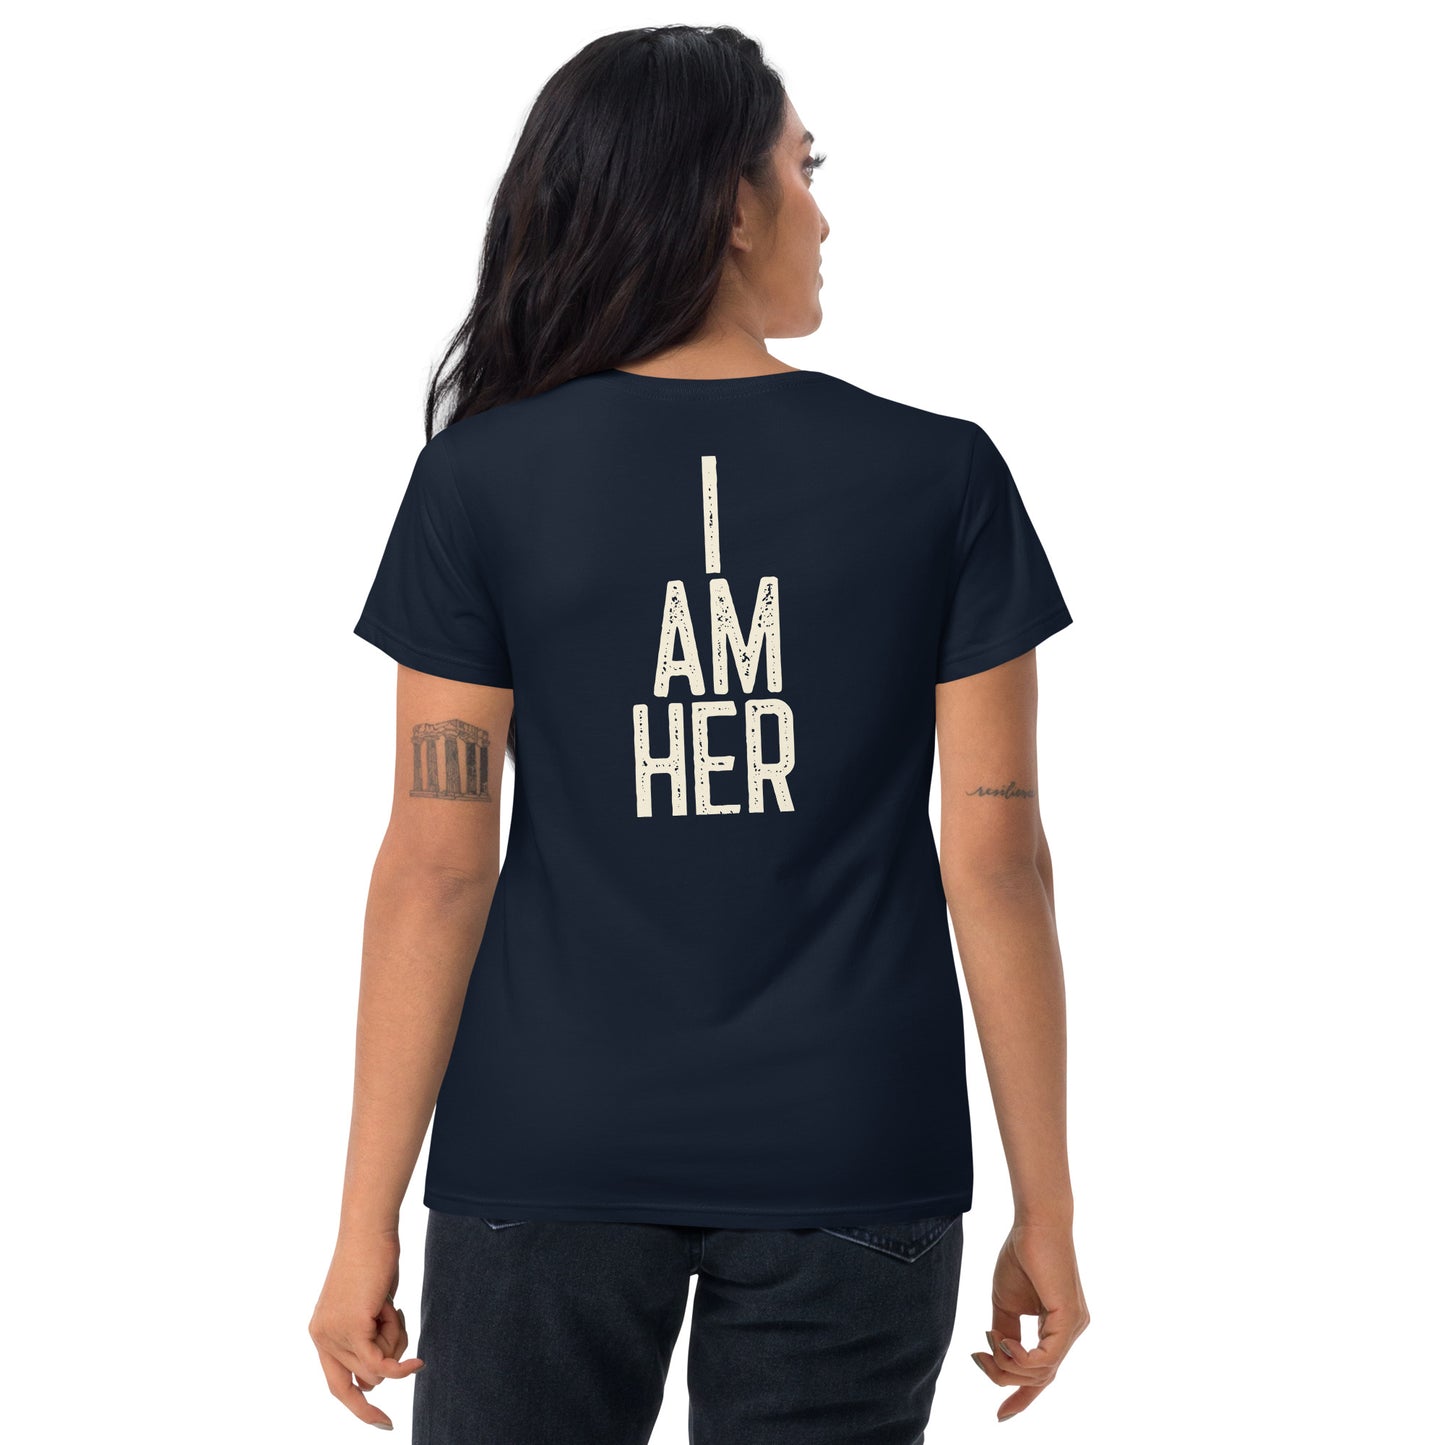 "I AM HER" - Women's short sleeve t-shirt